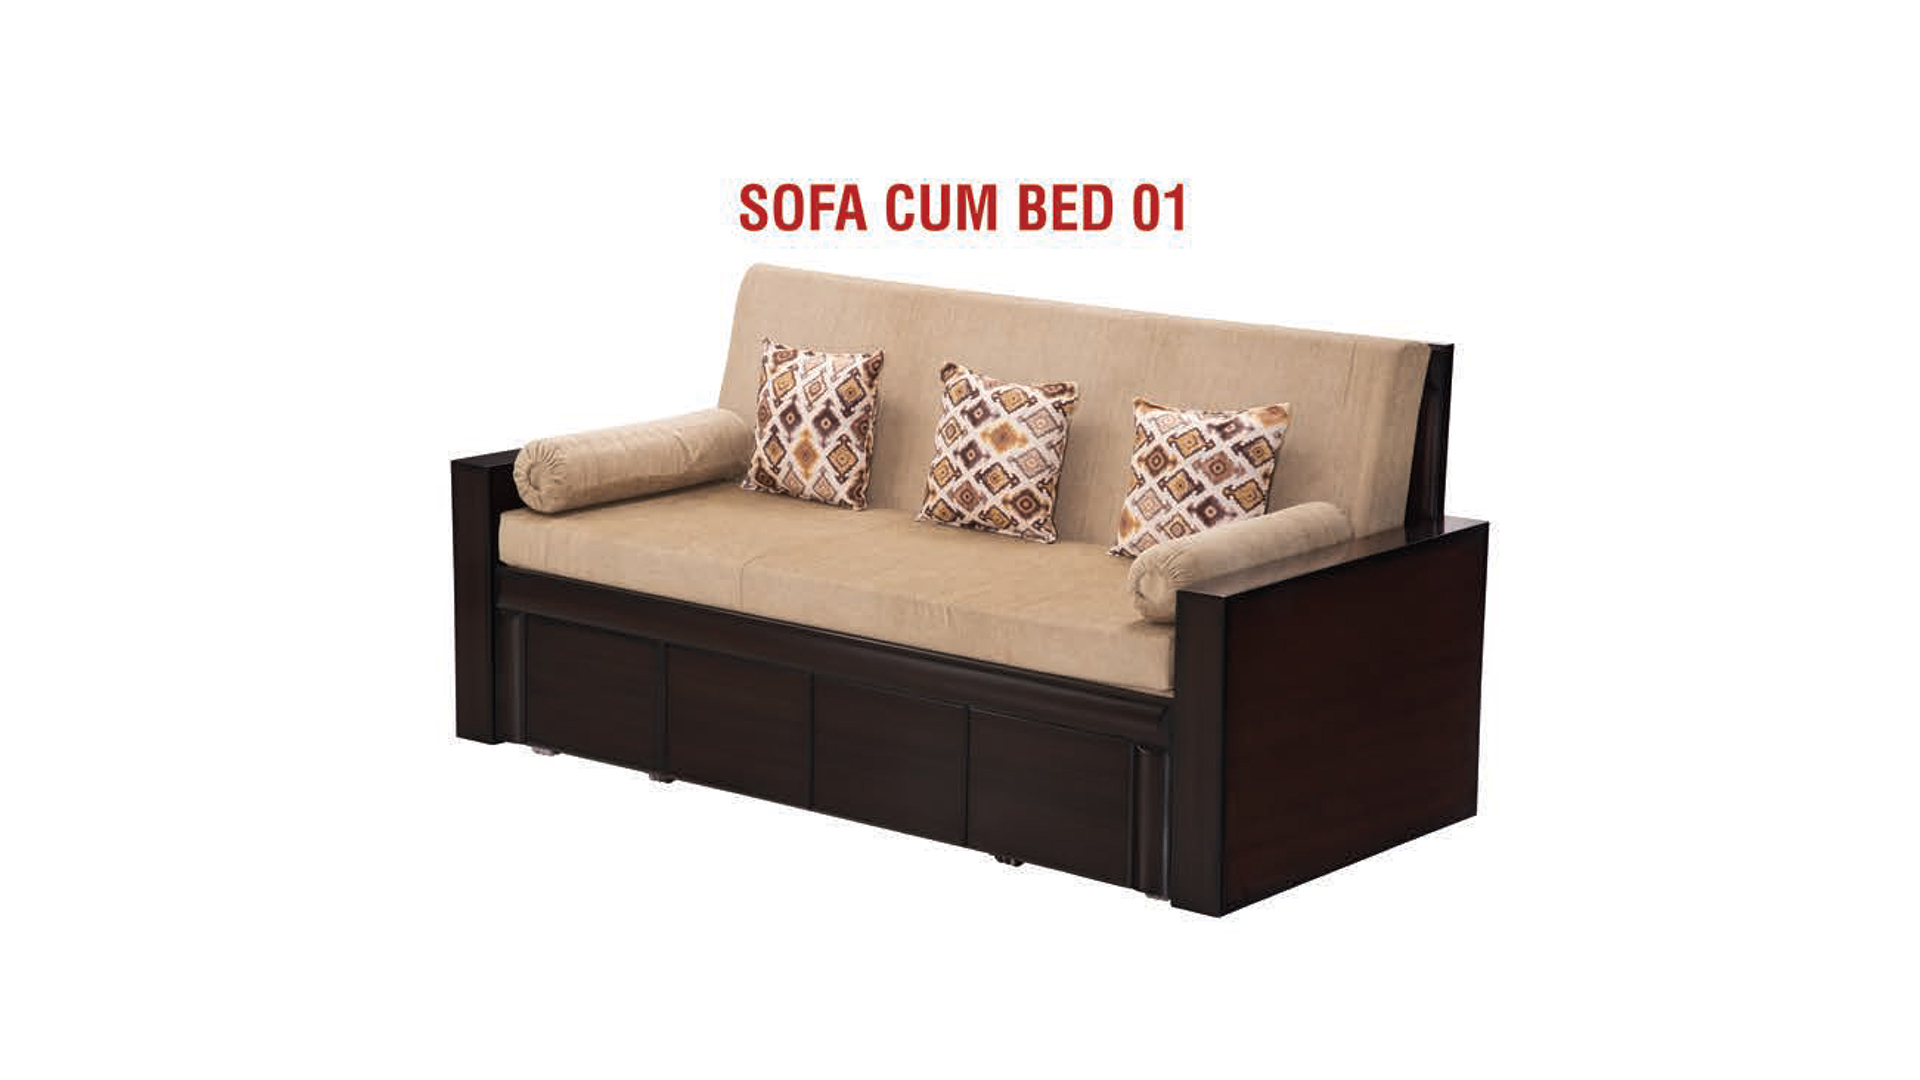 SOFA CUM BED 01